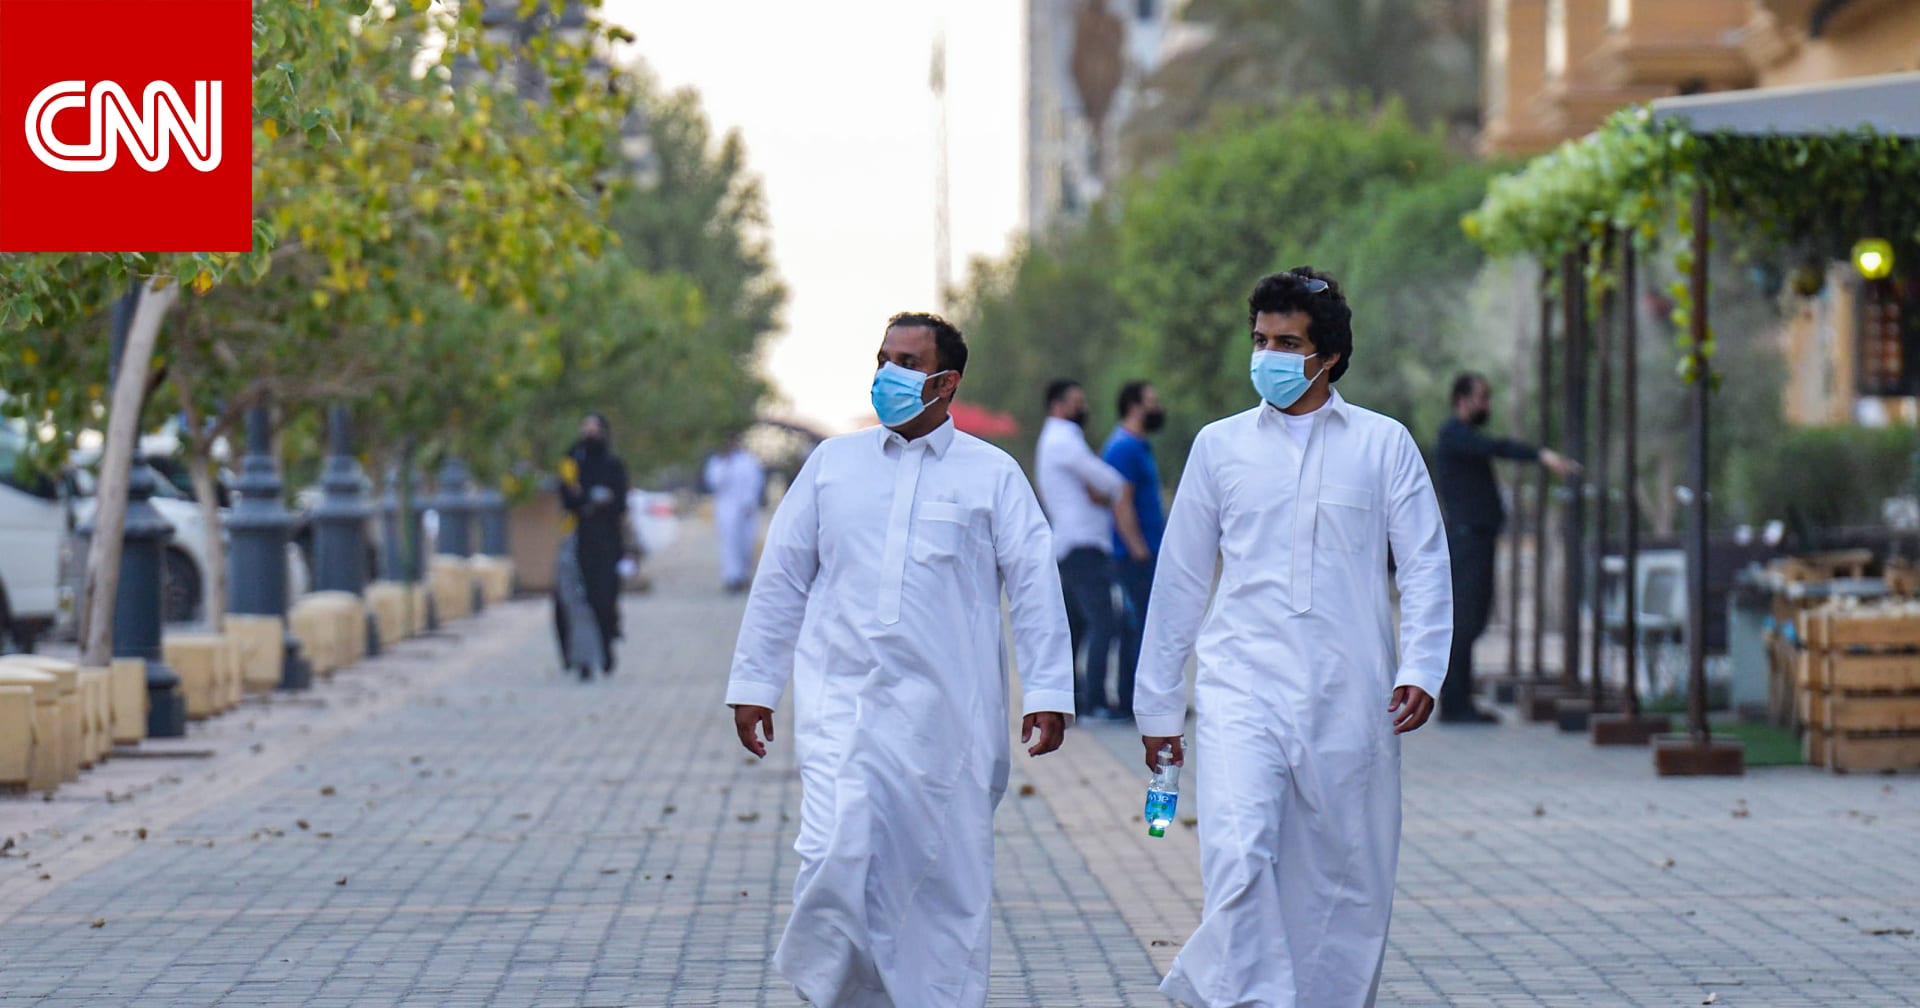 الصحة السعودية توضح الأمراض المزمنة التي قد تجعلك أكثر تأثرا بمضاعفات فيروس كورونا - CNN Arabic